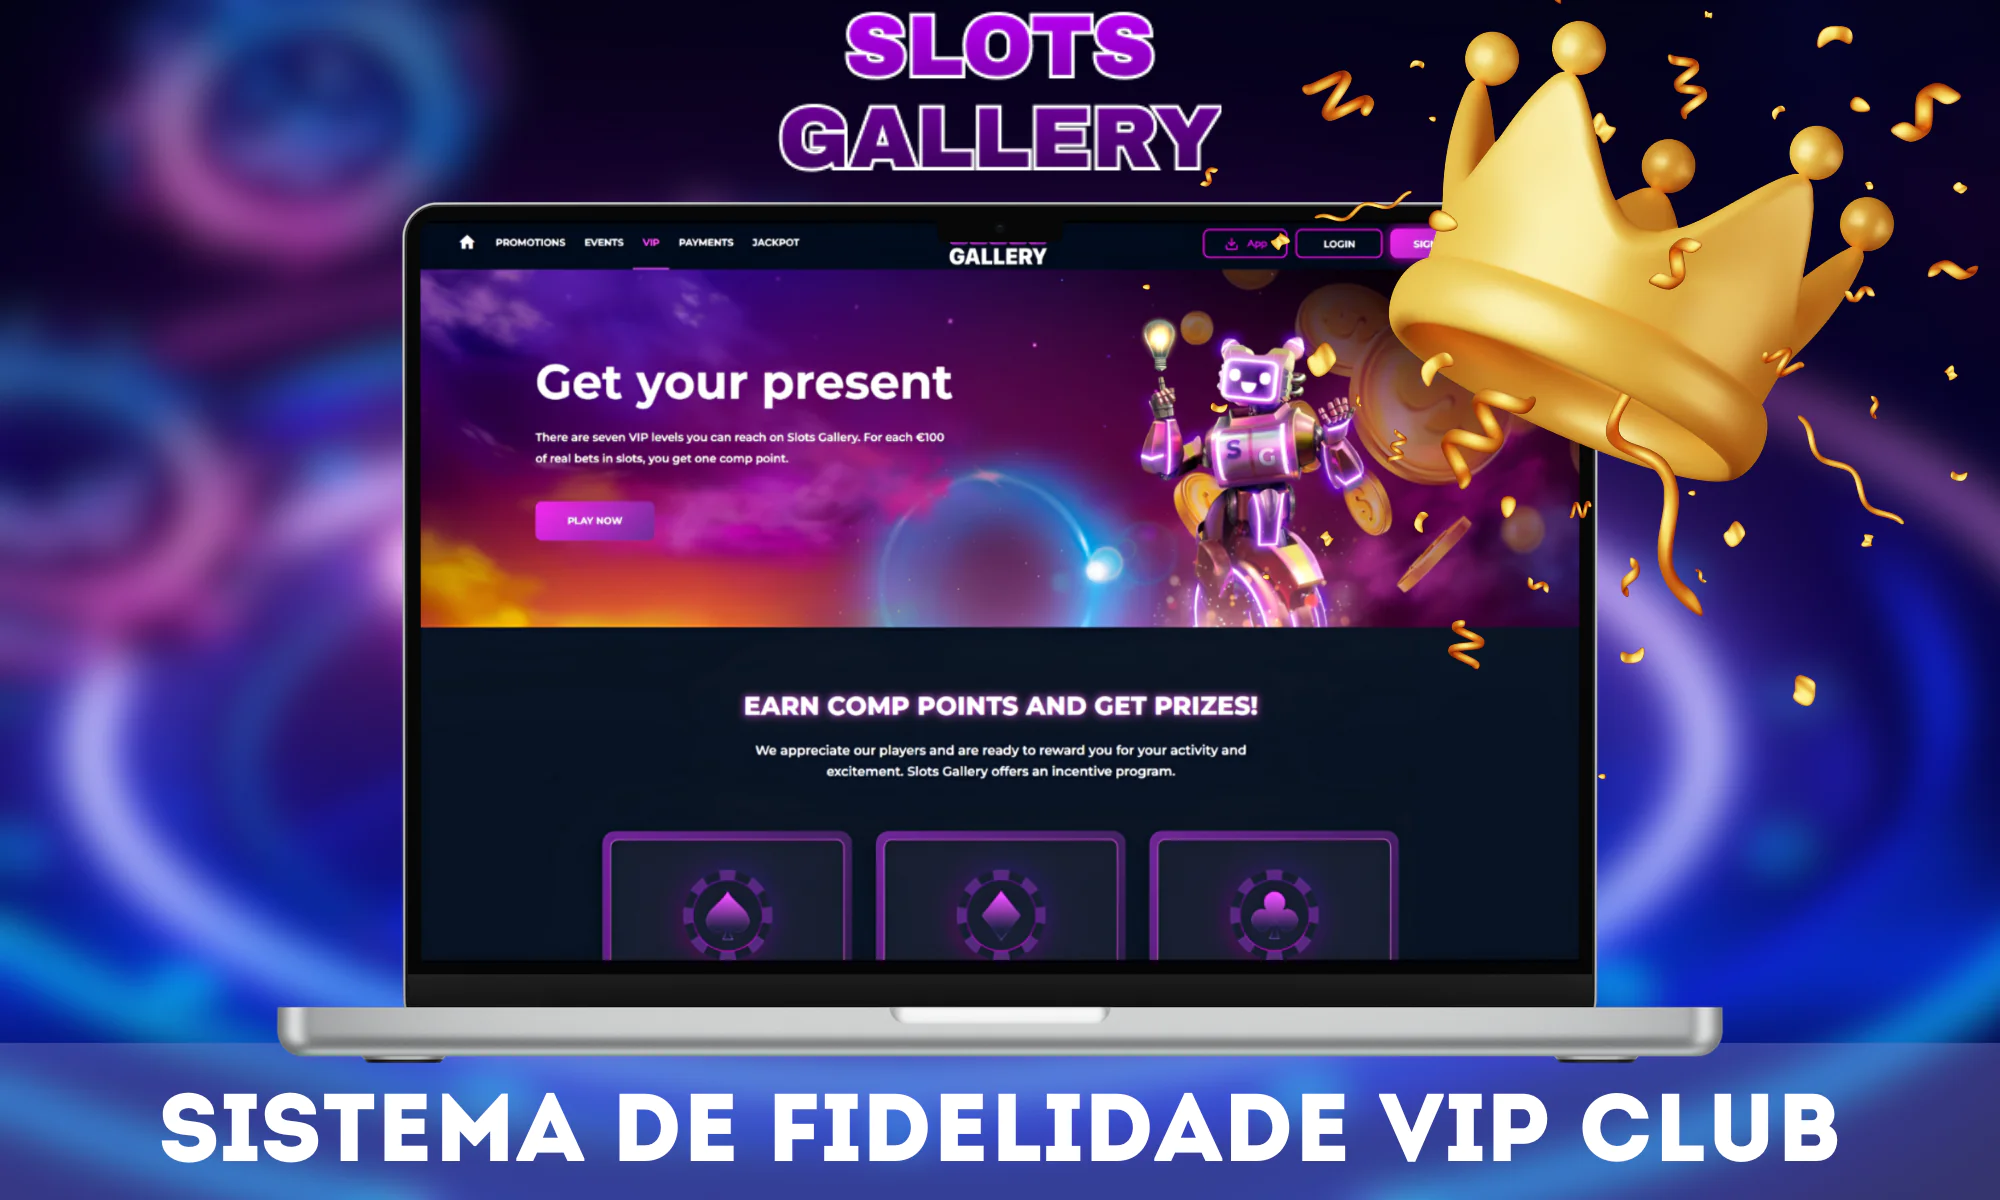 A Slots Gallery valoriza seus jogadores e, por isso, lançou um sistema de fidelidade VIP Club